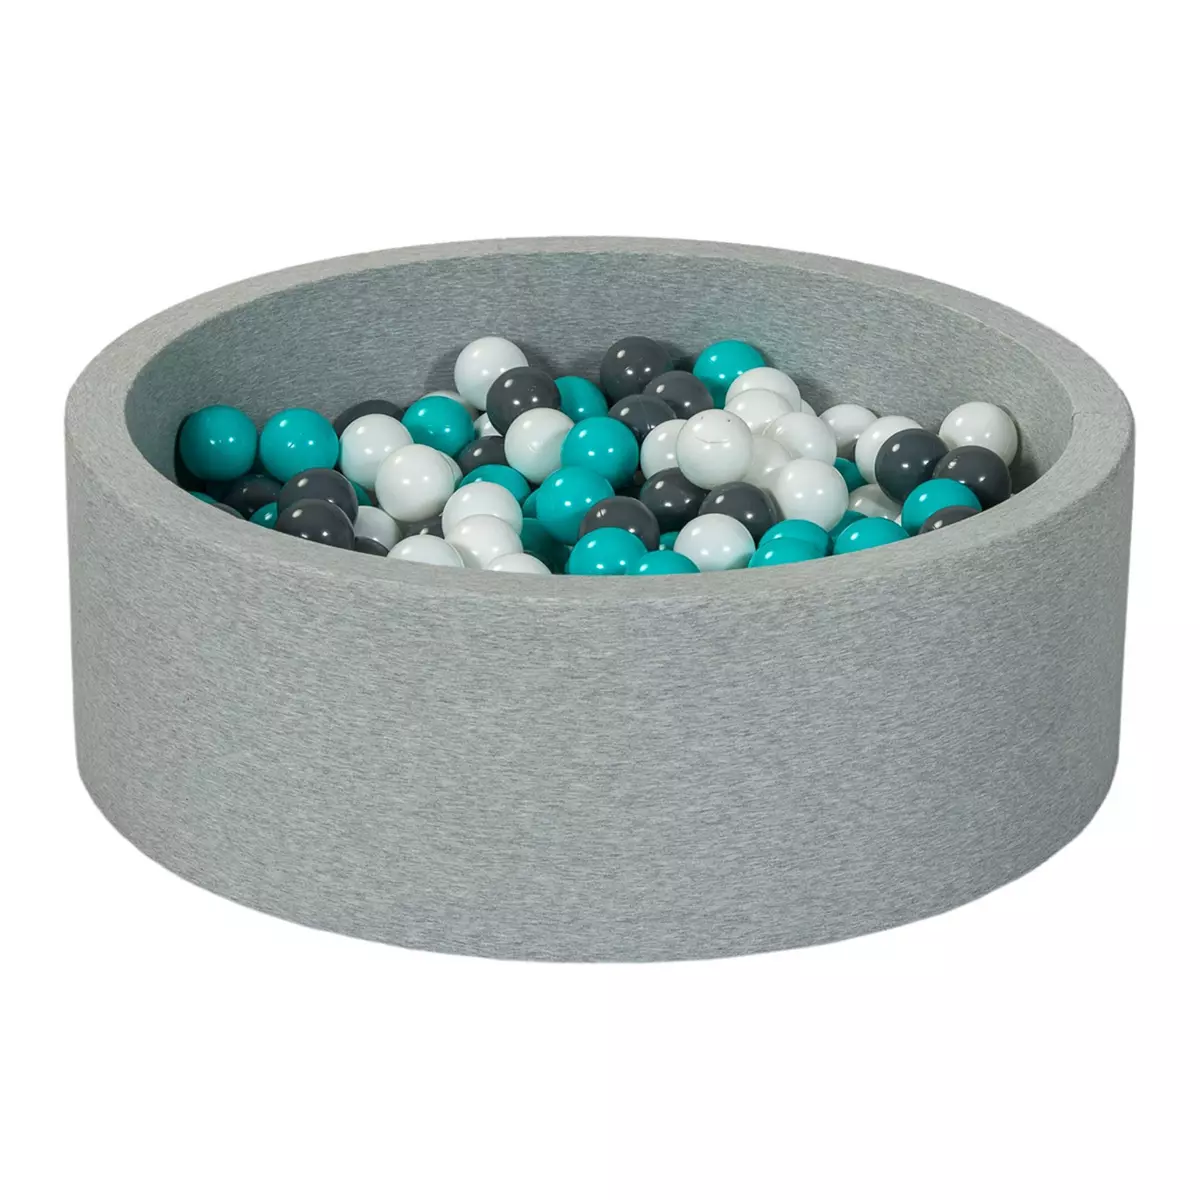  Piscine à balles Aire de jeu + 300 balles blanc, gris, turquoise